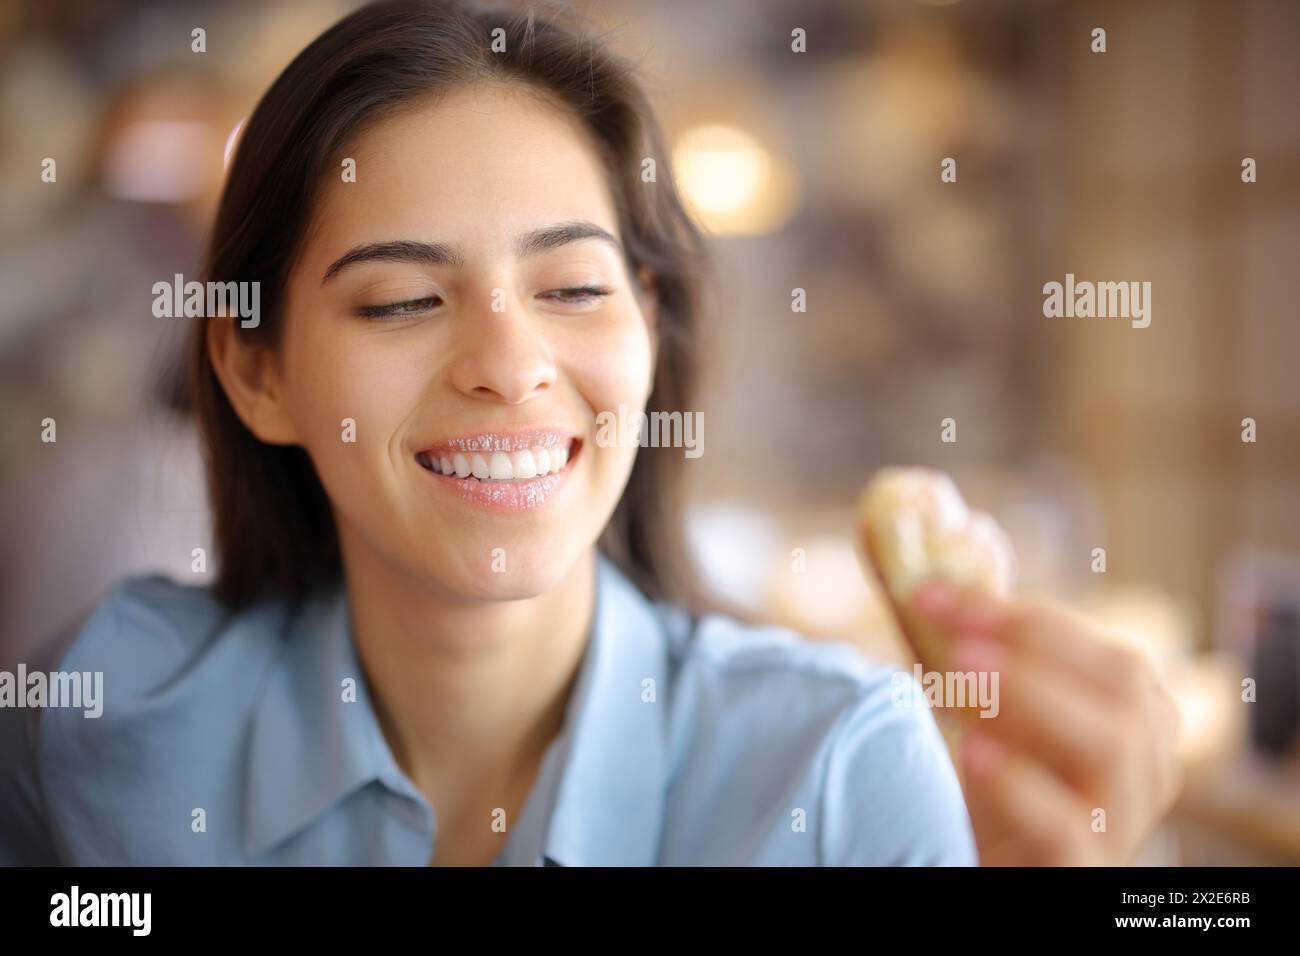 Femme heureuse avec un sourire blanc et des lèvres sales de sucre regardant croissant dans un restaurant Banque D'Images